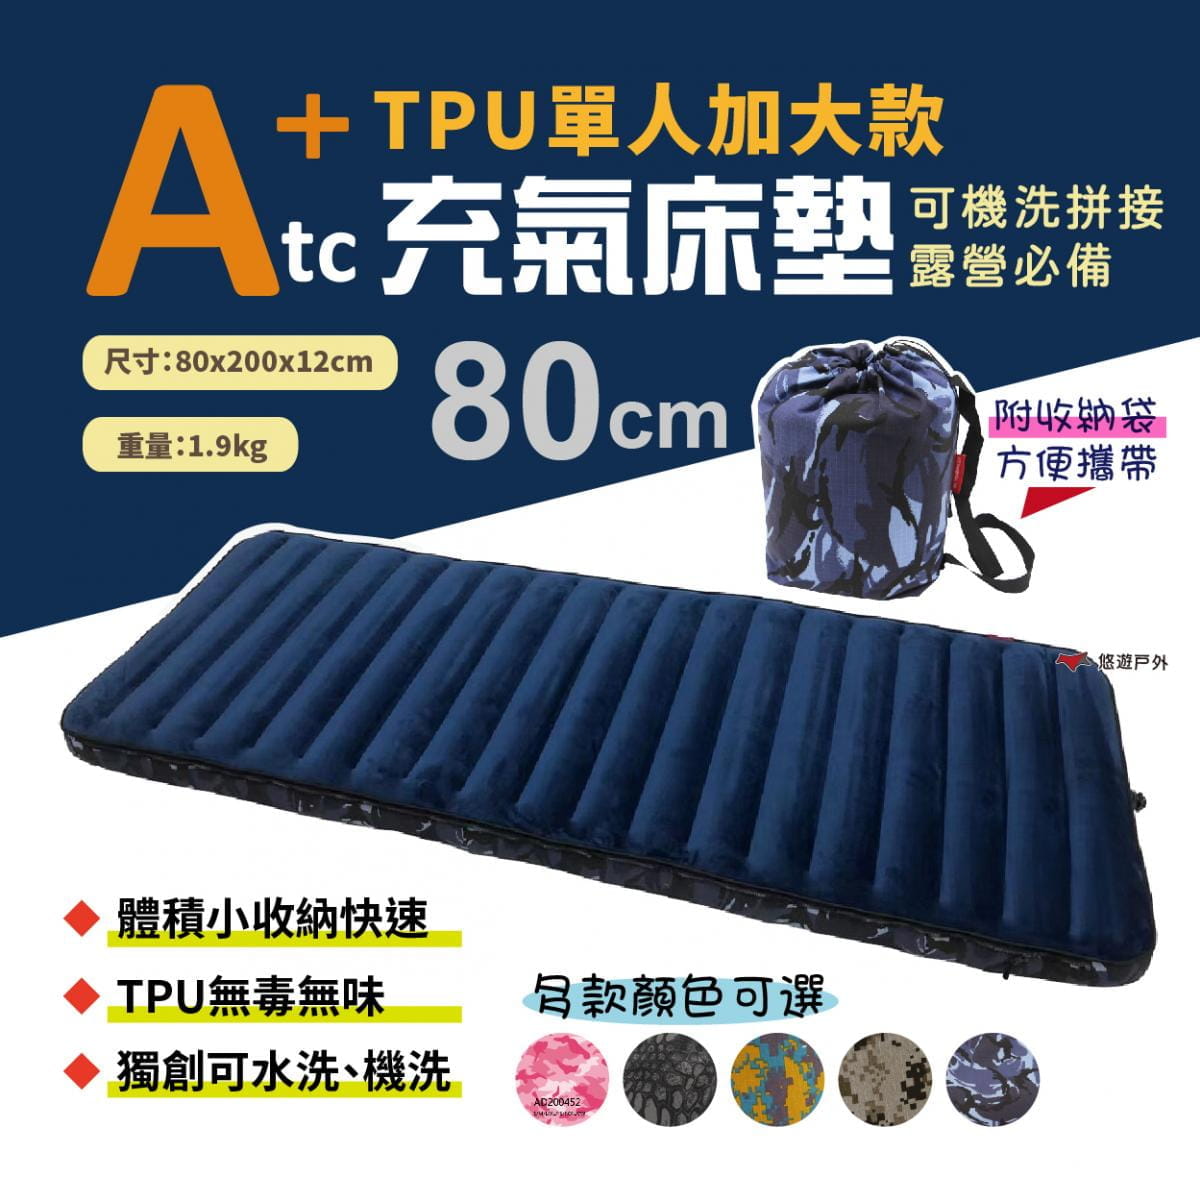 【ATC】TPU組合充氣床墊_80cm (悠遊戶外) 1